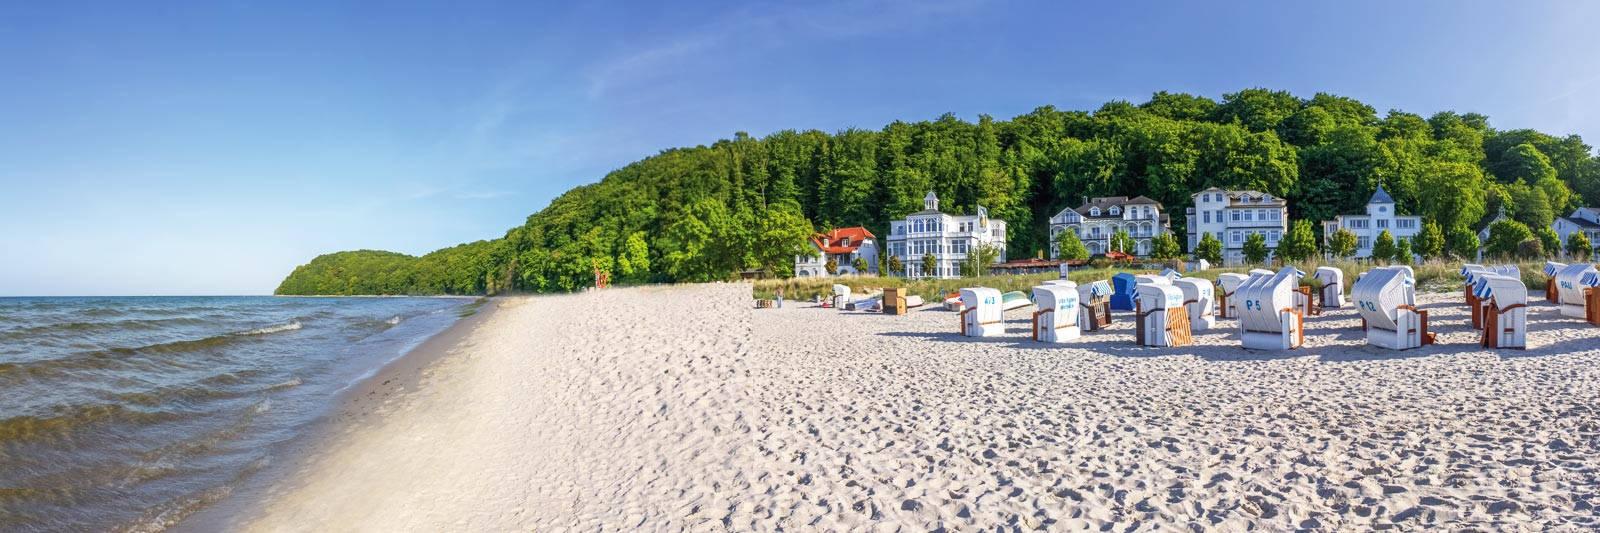 129 Ferienwohnungen und Ferienhäuser in Mirow - tourist-online.de